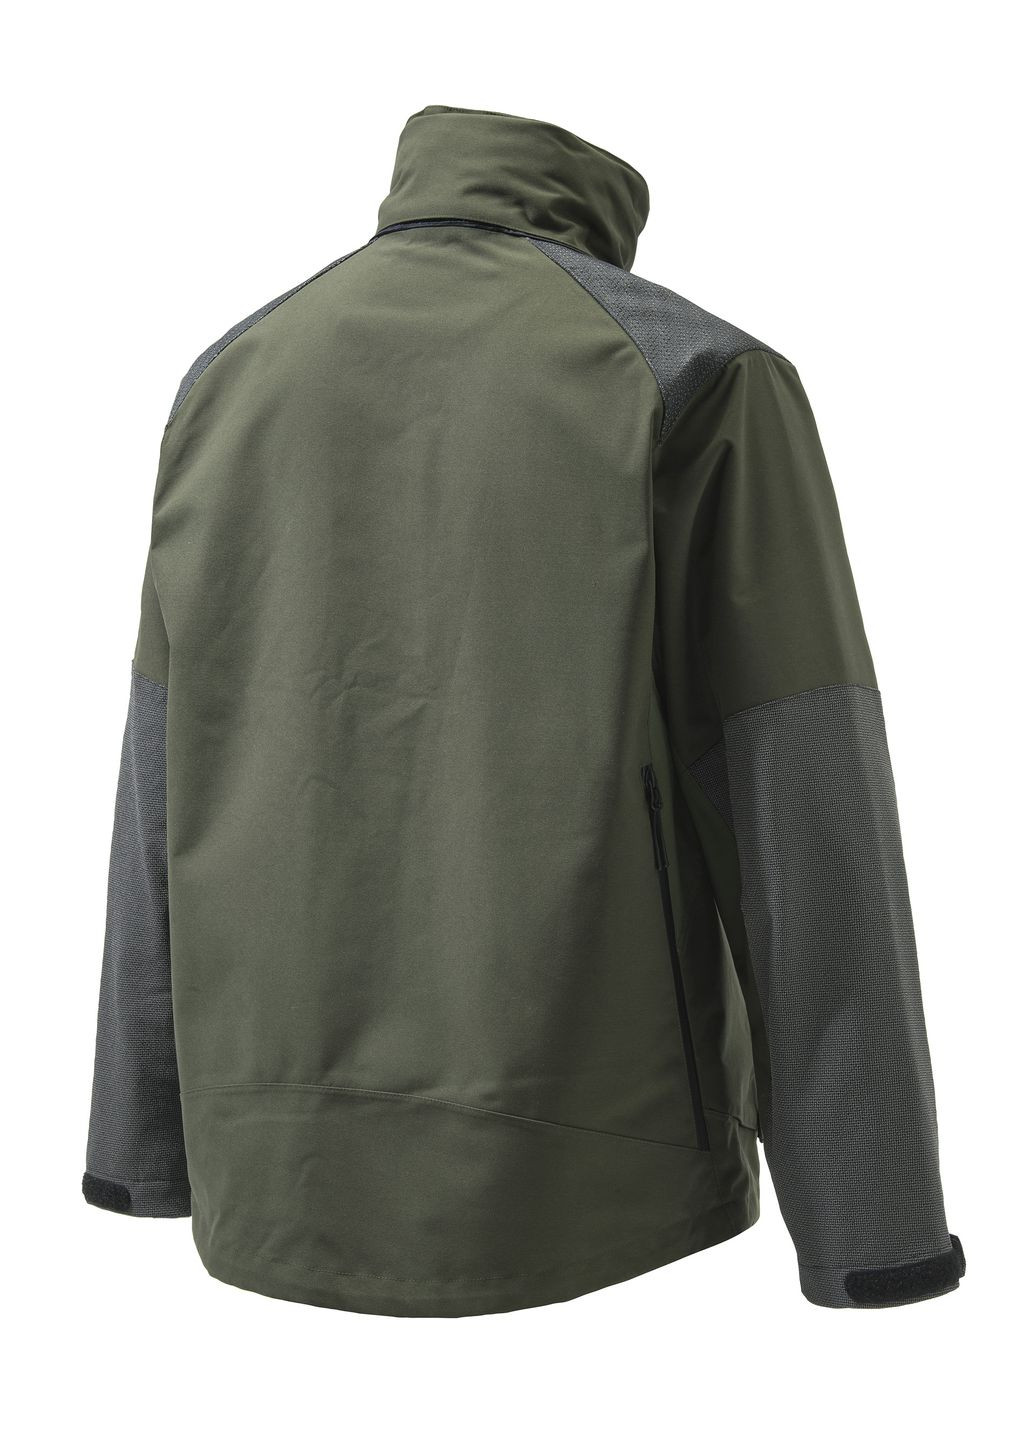 Зеленая демисезонная куртка охотничья alpine active men Beretta